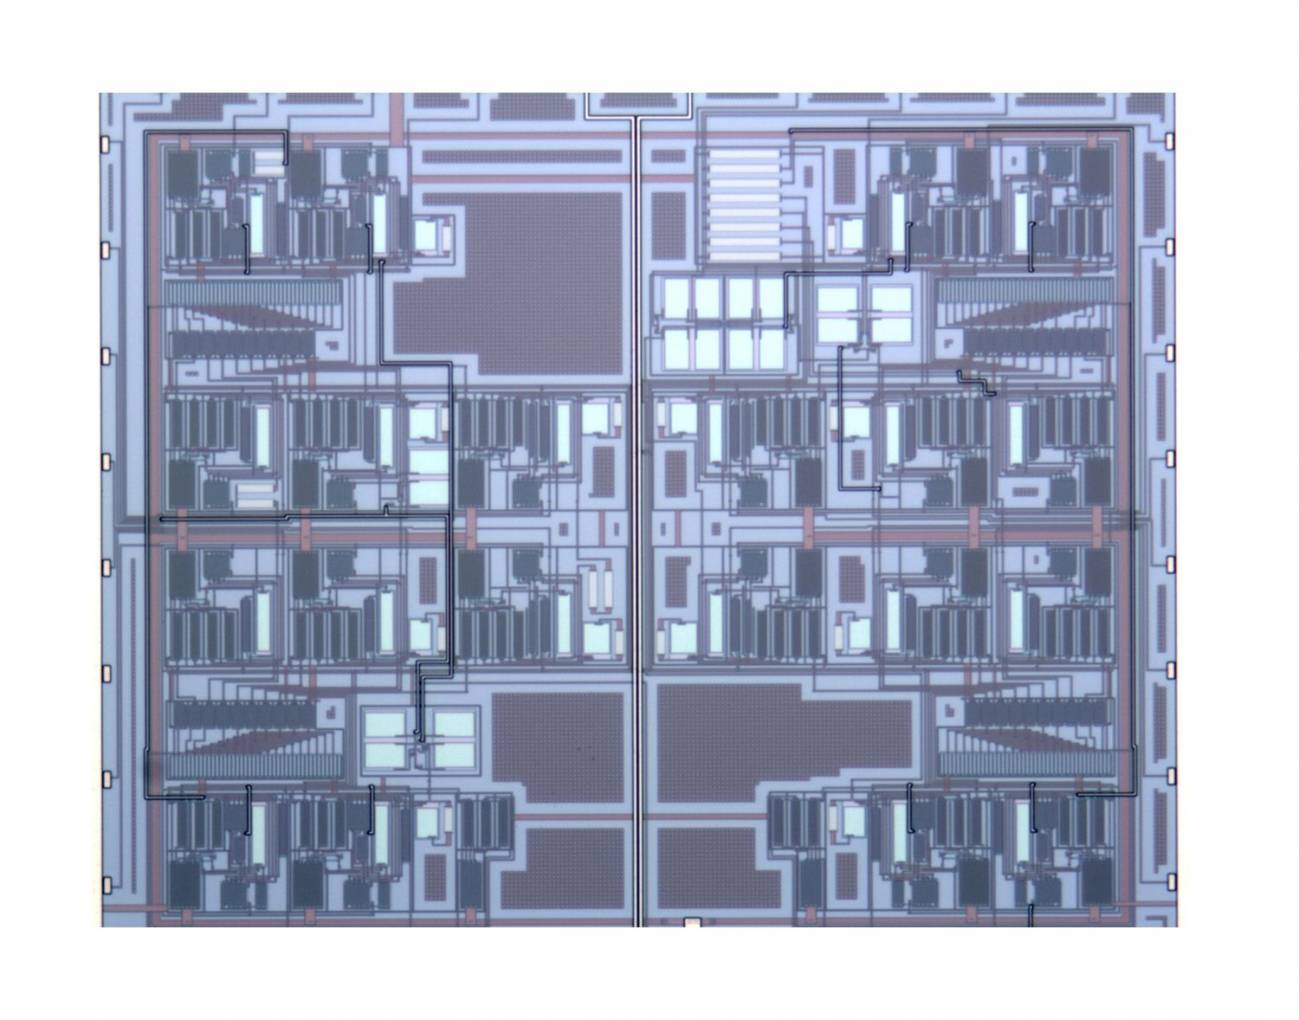 El chip incorpora un nuevo diseño de convertidor analógico digital de ultra bajo consumo. / UPNA